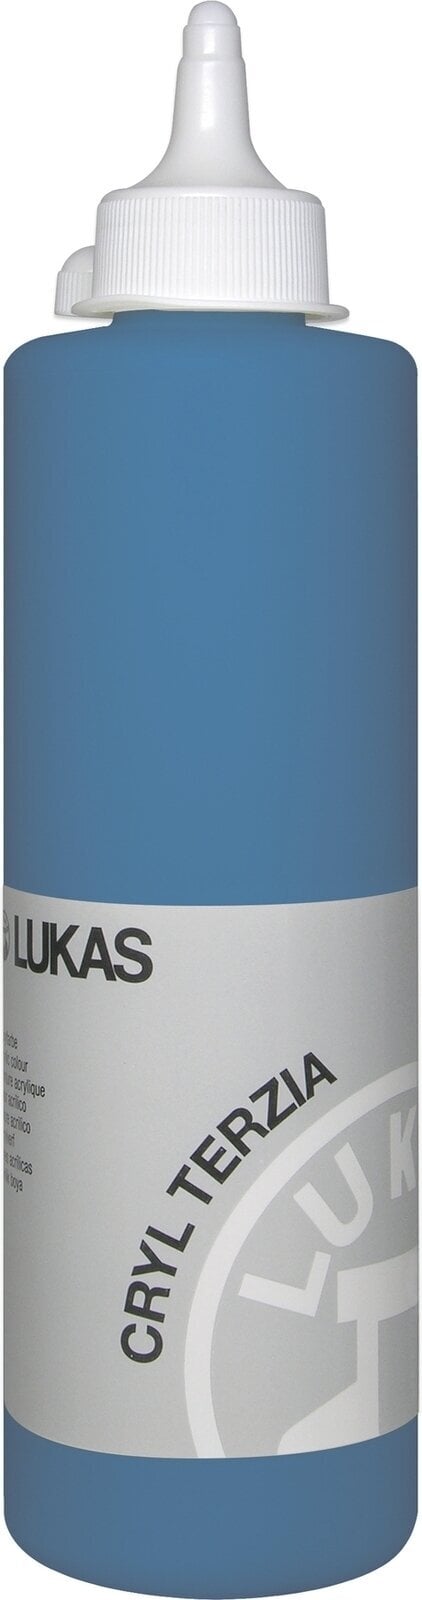 Akrylová barva Lukas Cryl Terzia Akrylová barva 500 ml Cerulean Blue